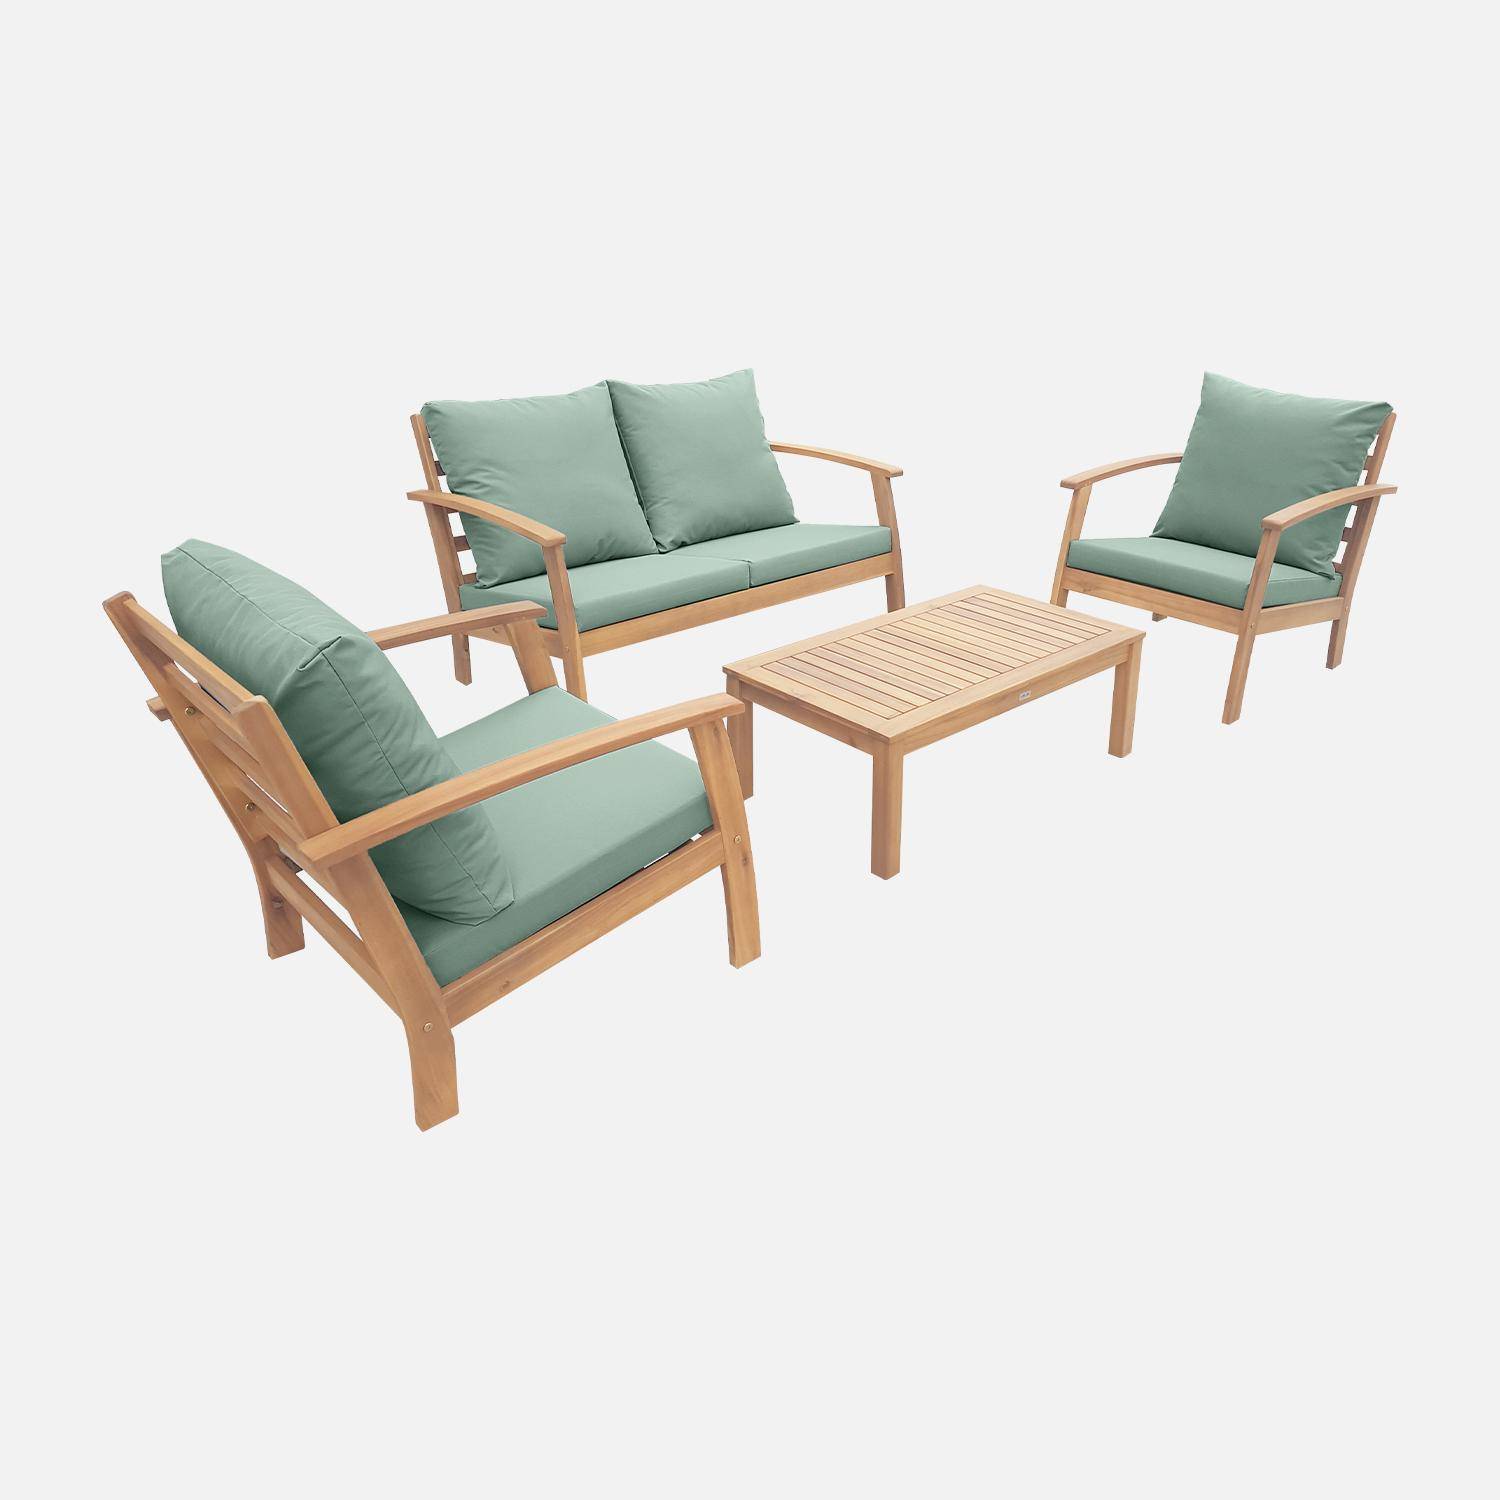 Salon de jardin en bois 4 places - Ushuaïa - Coussins vert de gris, canapé, fauteuils et table basse en acacia, design Photo2